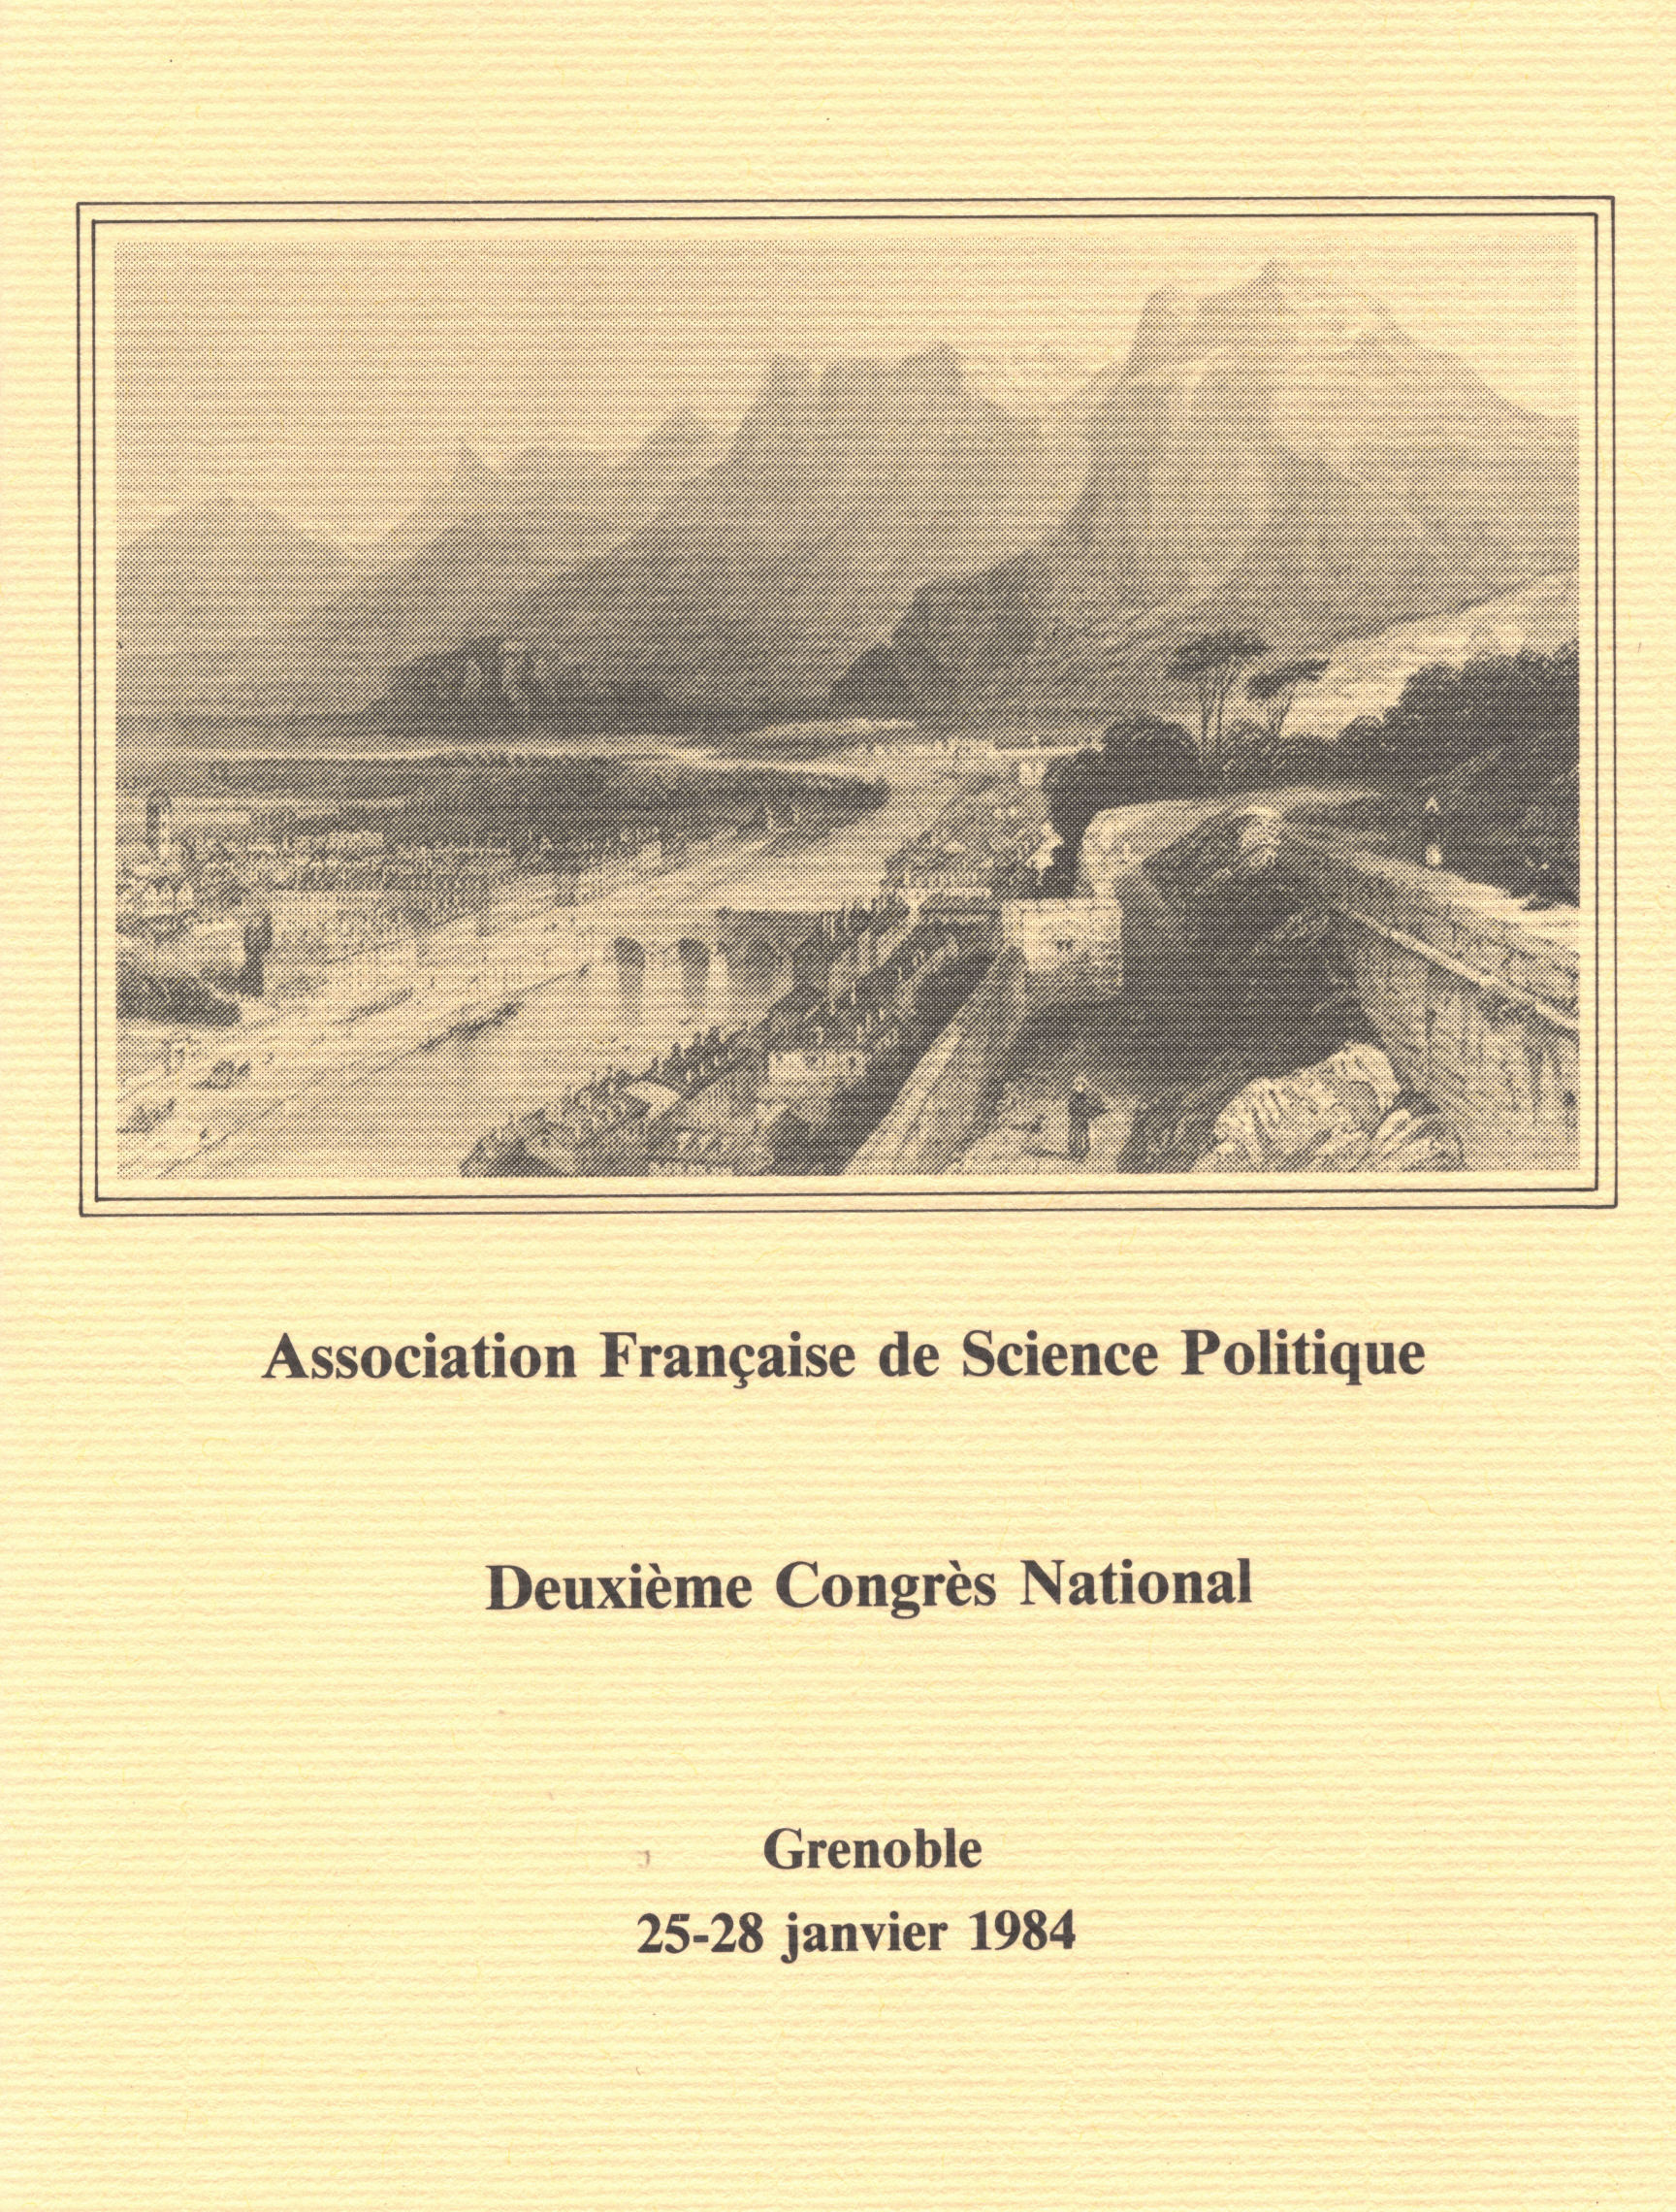 Brochure congrès AFSP 1984